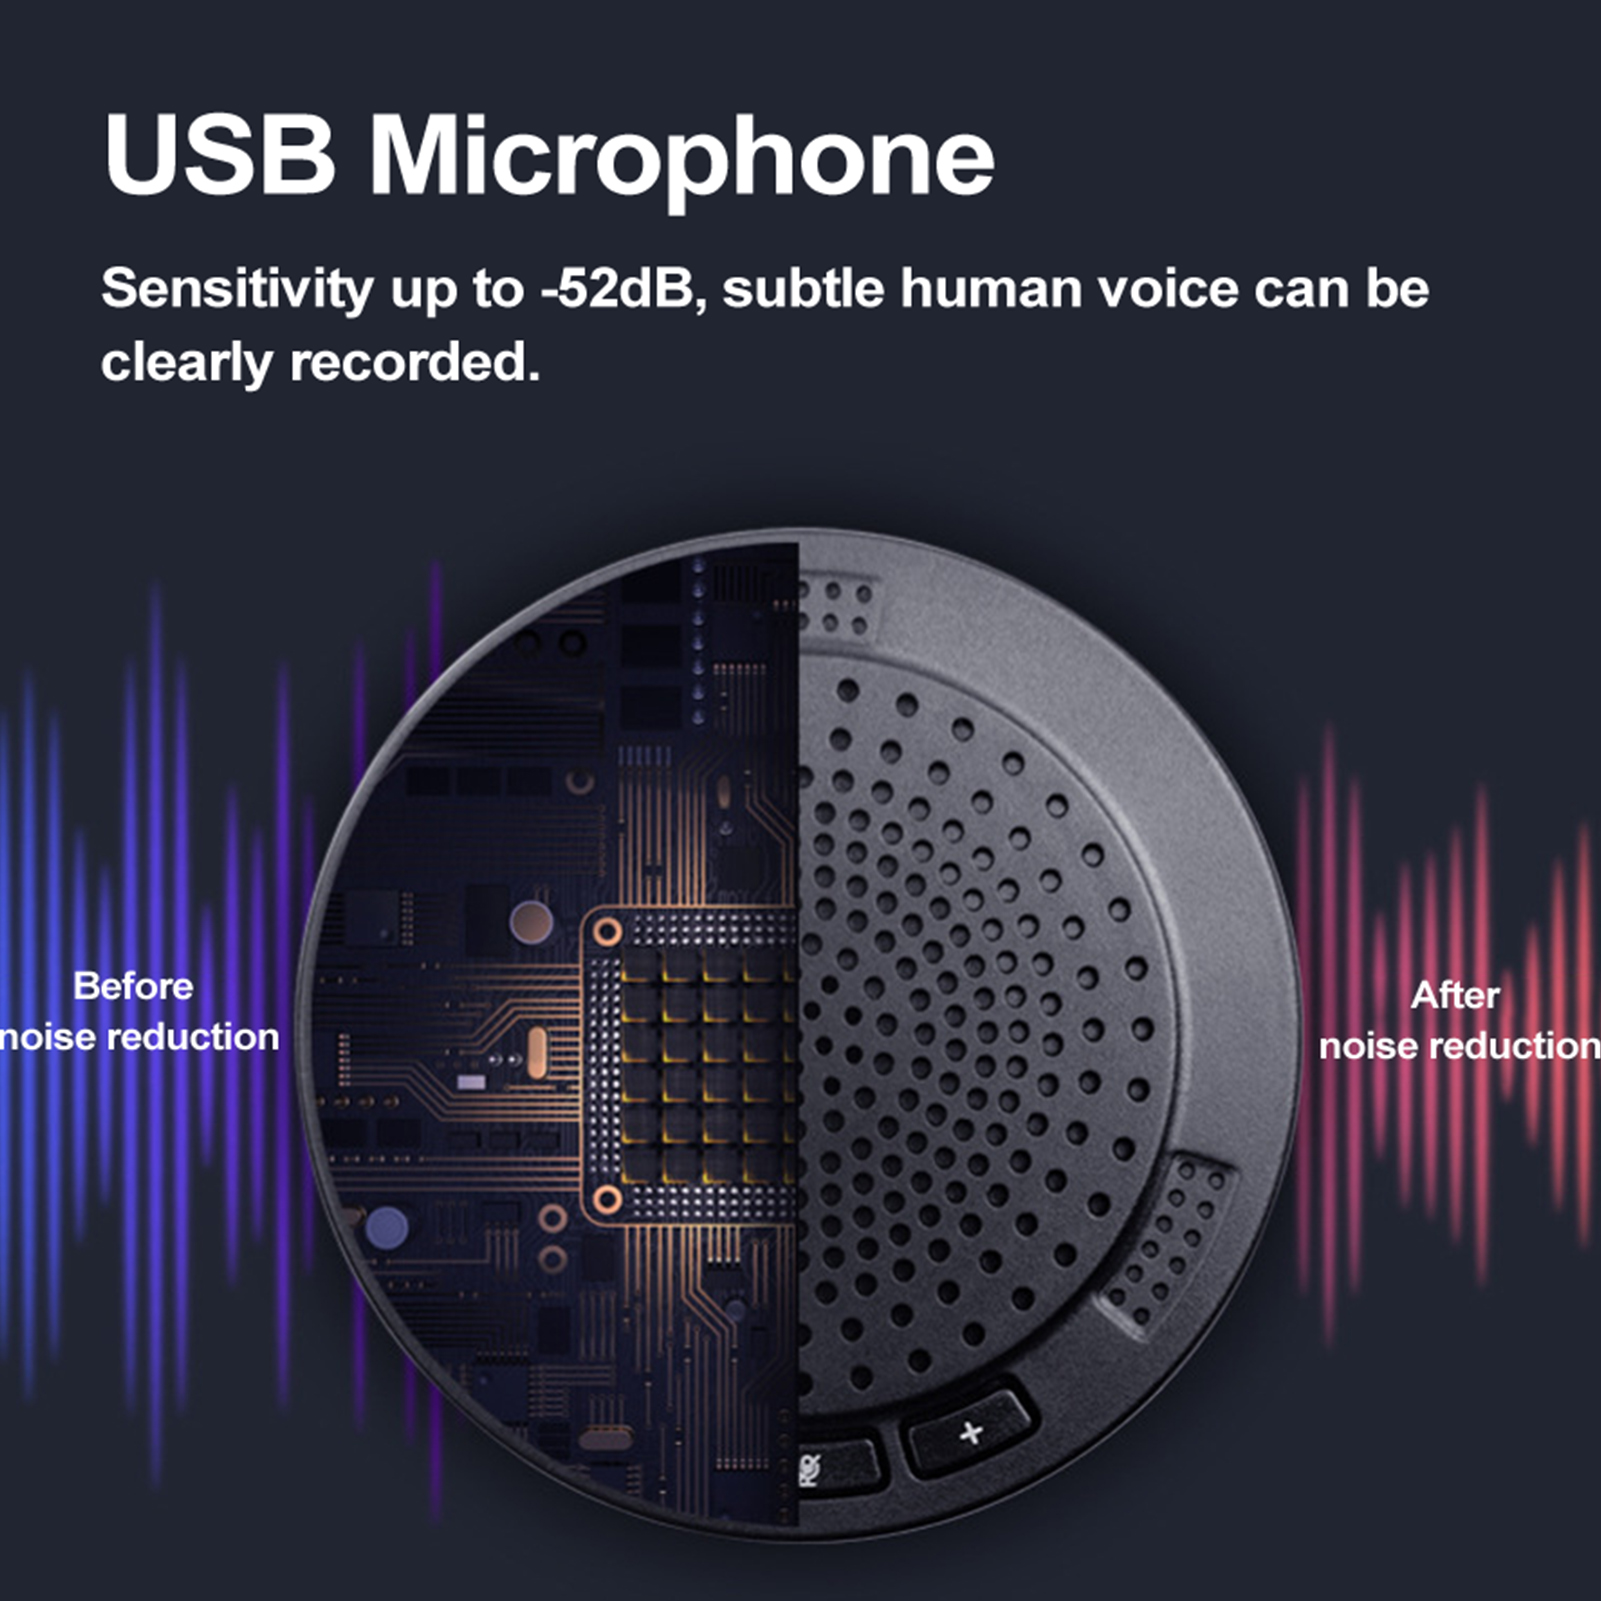 ข้อมูลเพิ่มเติมของ 【ซื้อแค่นี้ก็พอ】ไมโครโฟน ประชุม ไมค์เก็บเสียง เก็บเสียงรอบทิศทาง360°  ทำให้เสียงคมชัดไร้เสียงรบกวน ไมโครโฟนขนาดเล็ก conference microphone